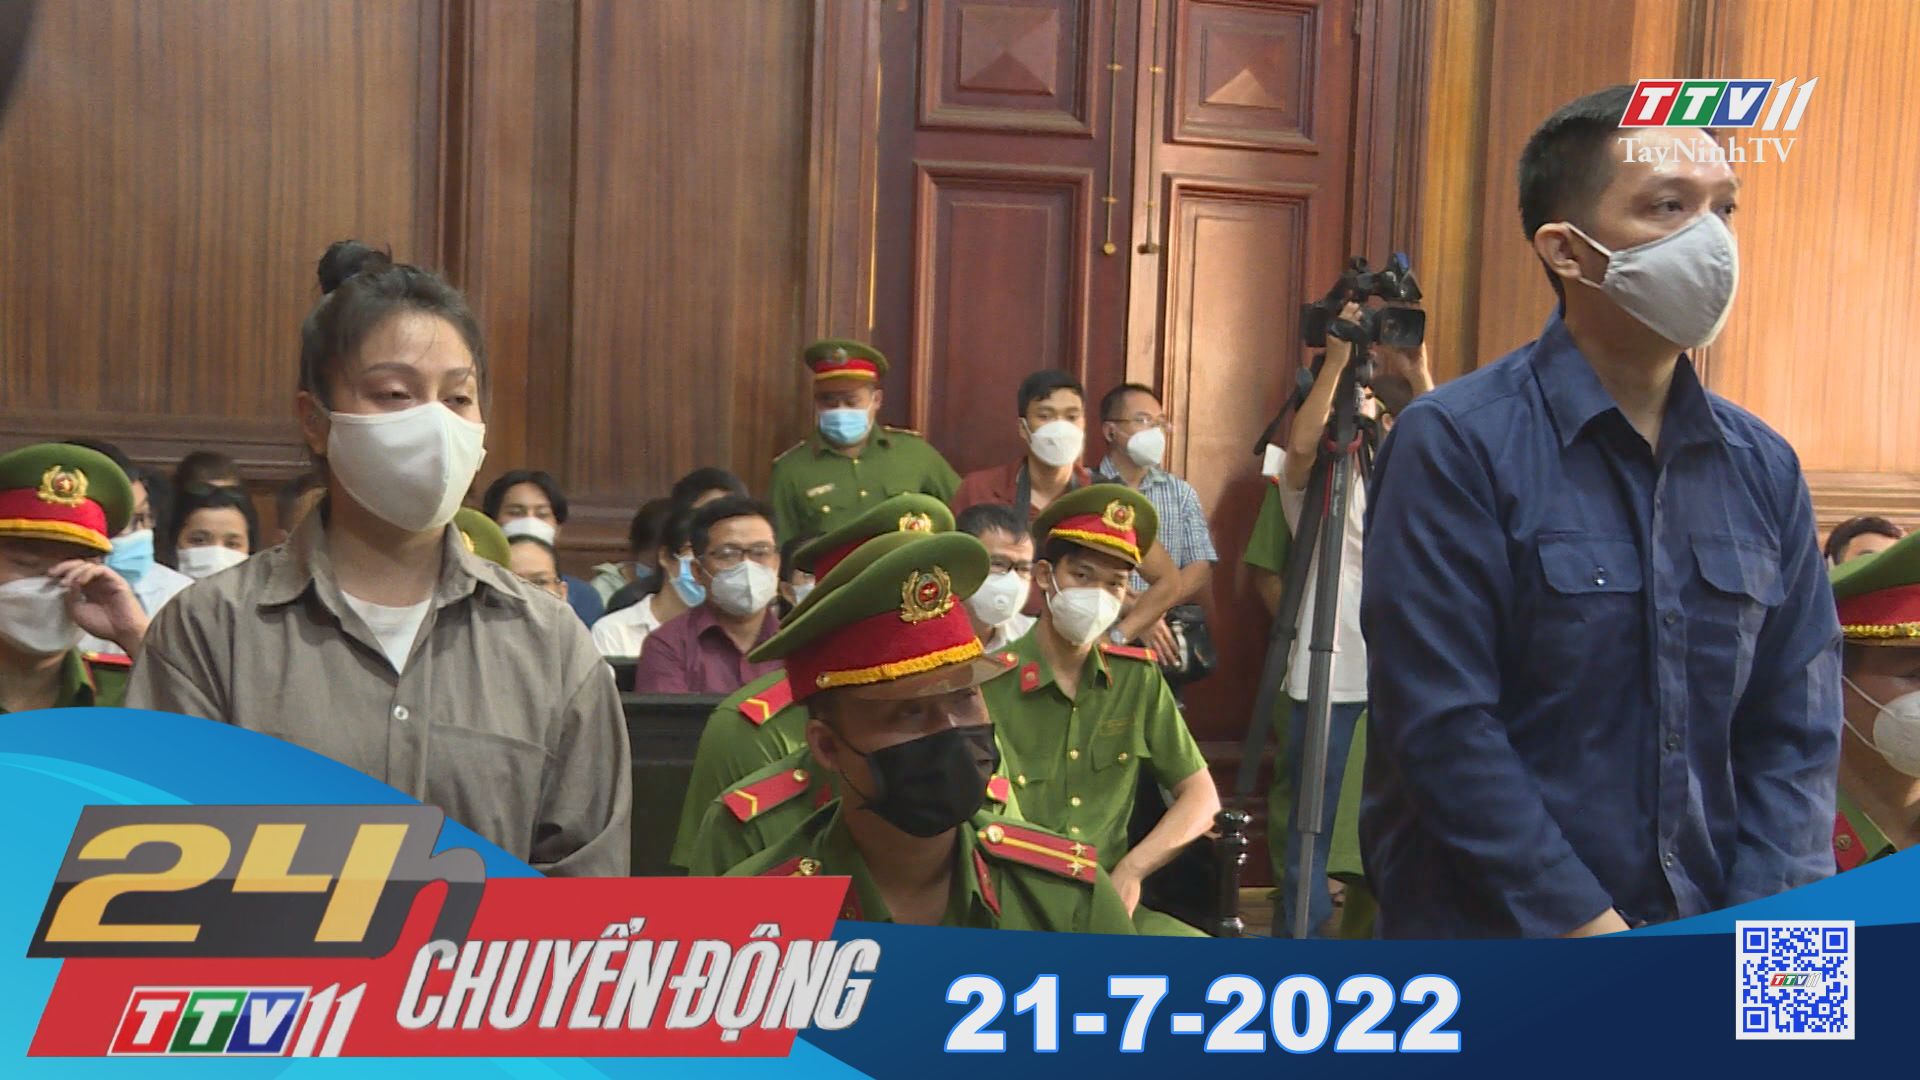 24h Chuyển động 21-7-2022 | Tin tức hôm nay | TayNinhTV